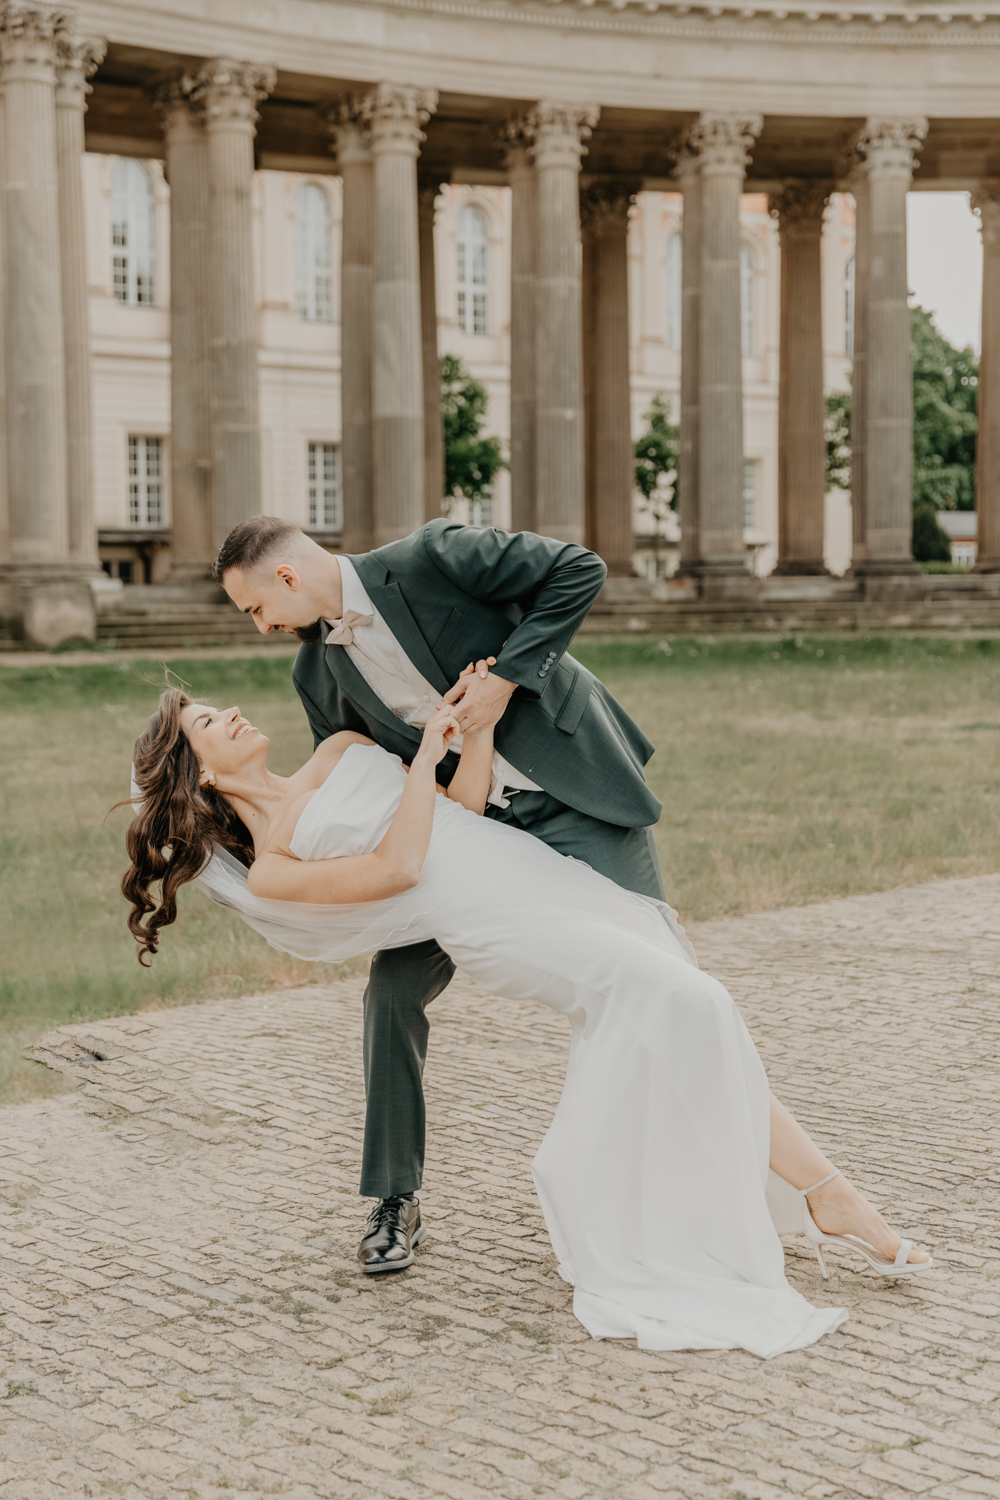 Der Bräutigam schaut seine Braut an. Das Brautpaar tanzt gerade im Park Sanssouci. Der Bräutigam haält seine Frau fest an den Händen. Die Braut lehnt sich nach hinten. Das Shooting fand am Neuen Palais im Schloßpark Sanssouci in Potsdam statt und war Teil einer ganztägigen Hochzeitsreportage.